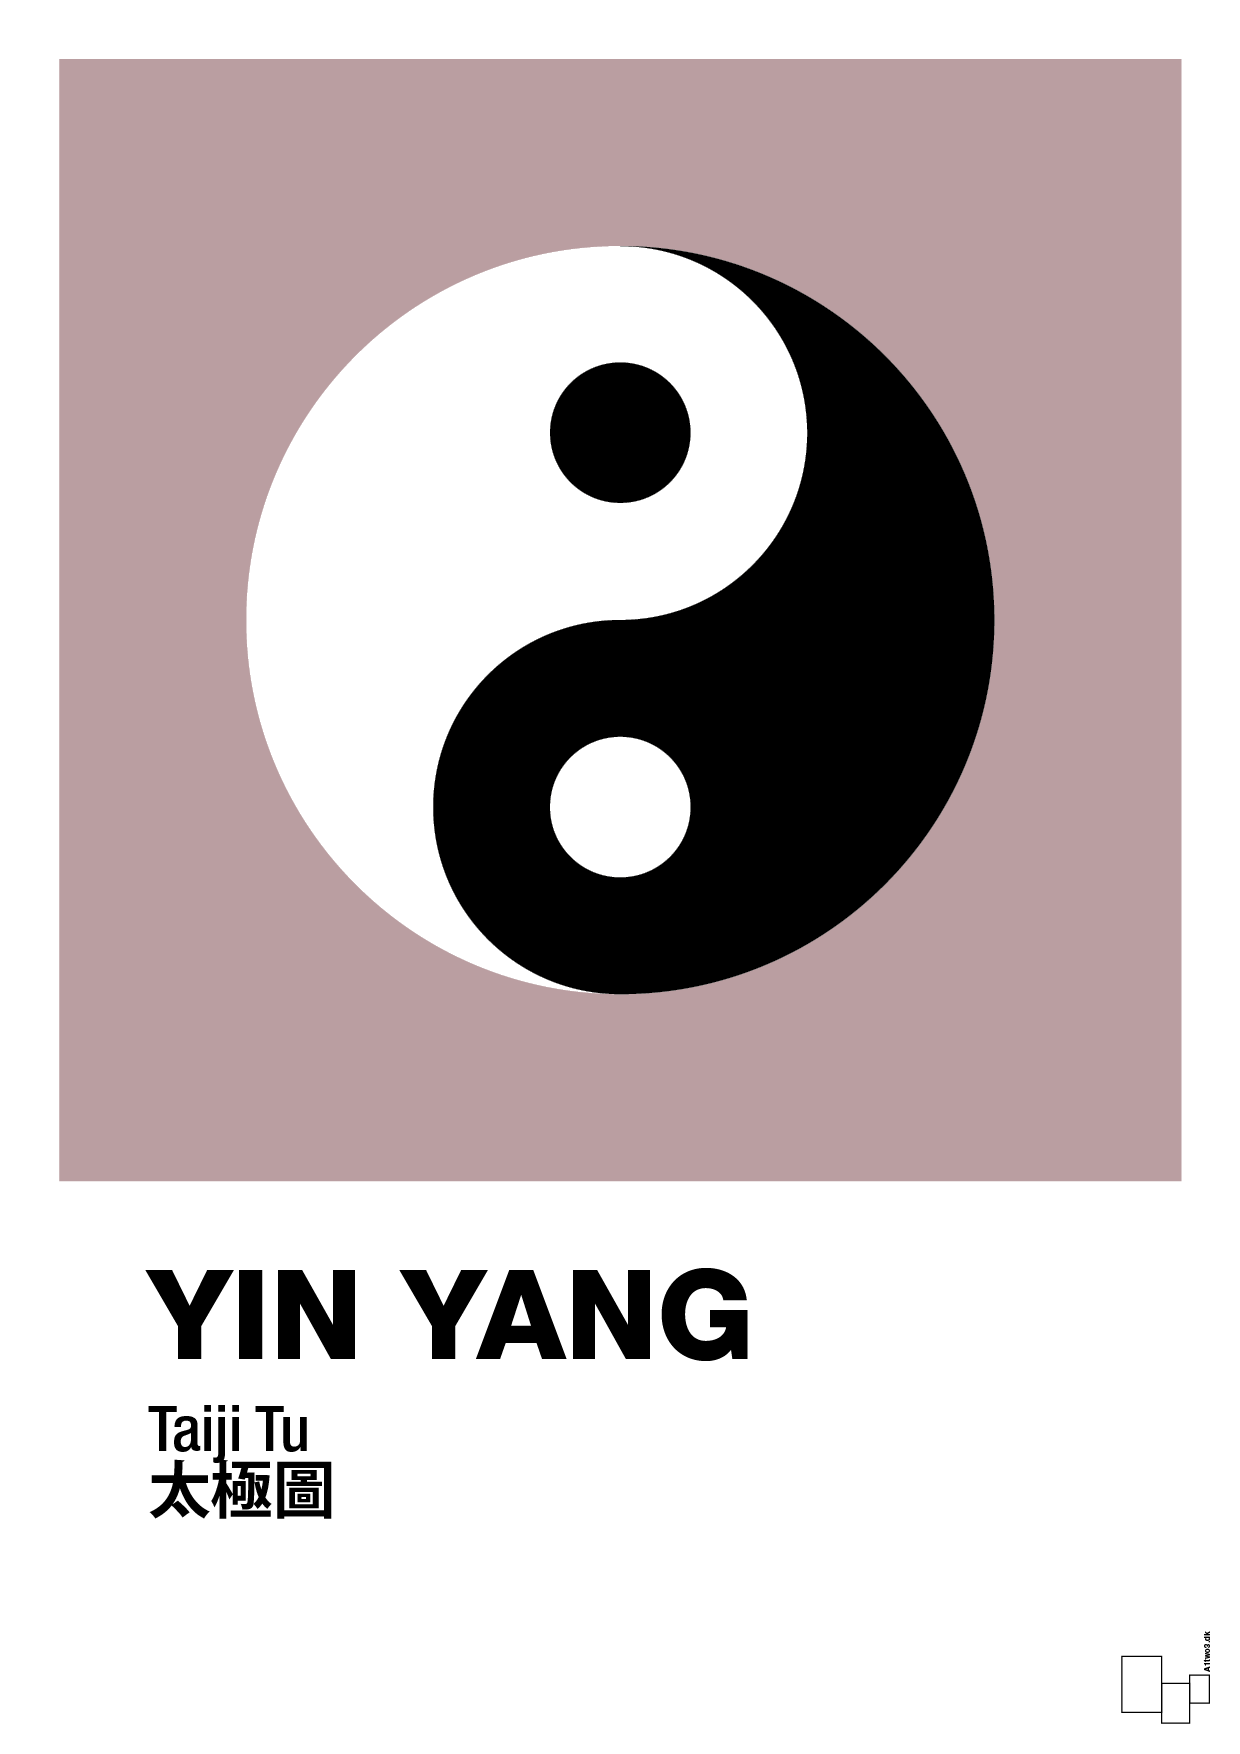 yin yang - Plakat med Videnskab i Light Rose